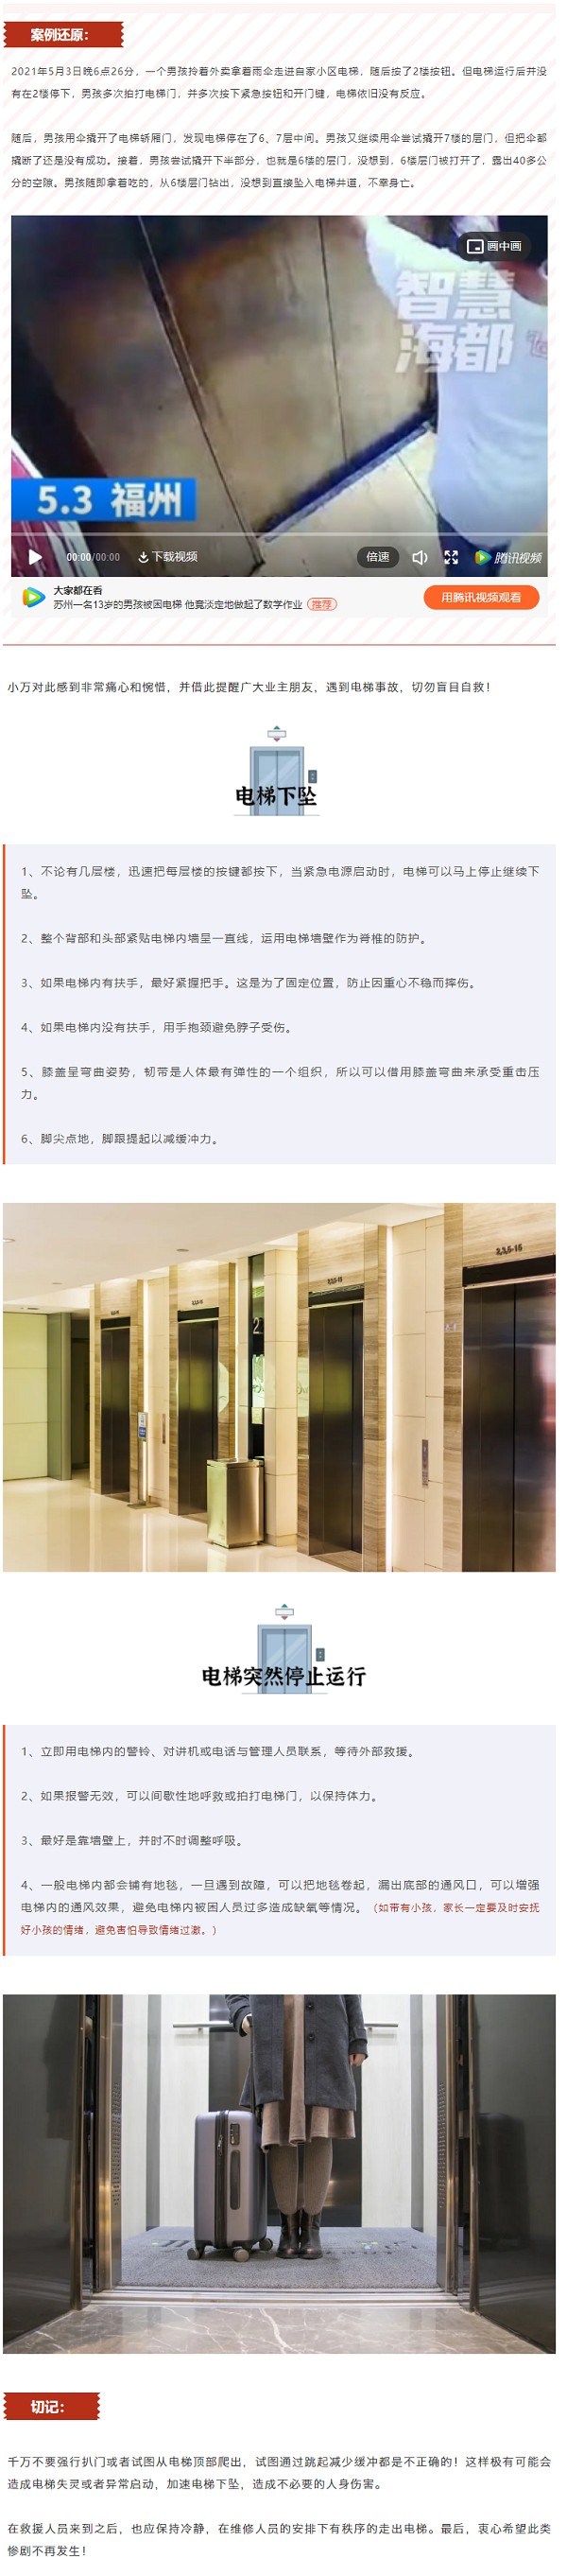 電梯安全.png